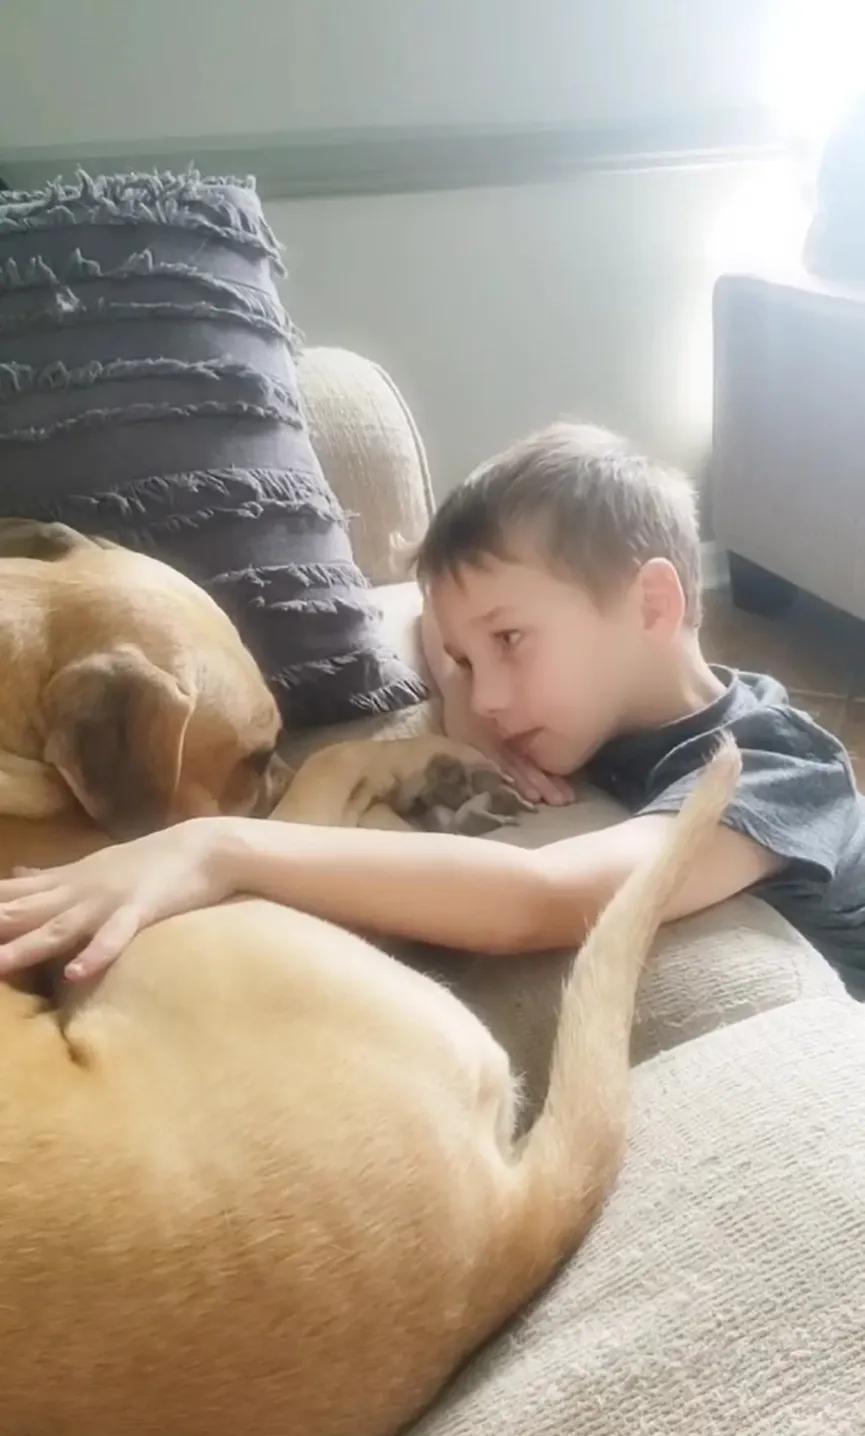 7-jarige jongen adopteert getraumatiseerde hond en stelt hem gerust- "We houden zoveel van je" 5